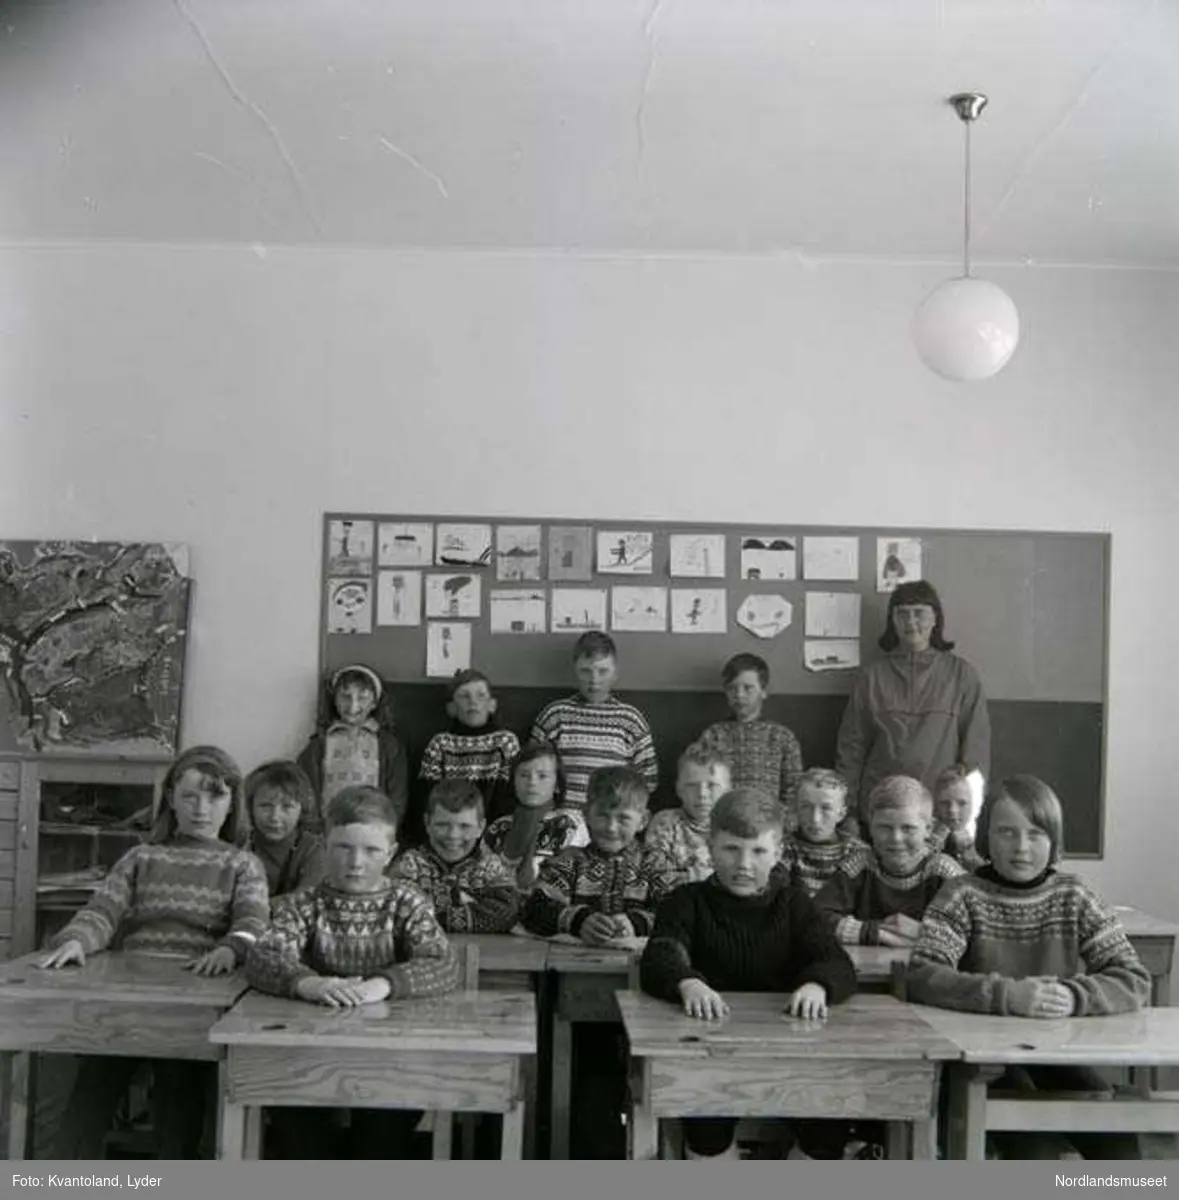 Kvantolands protokoll: Kl. i folkeskolen Røsvik - lærerinne fru Dyvik